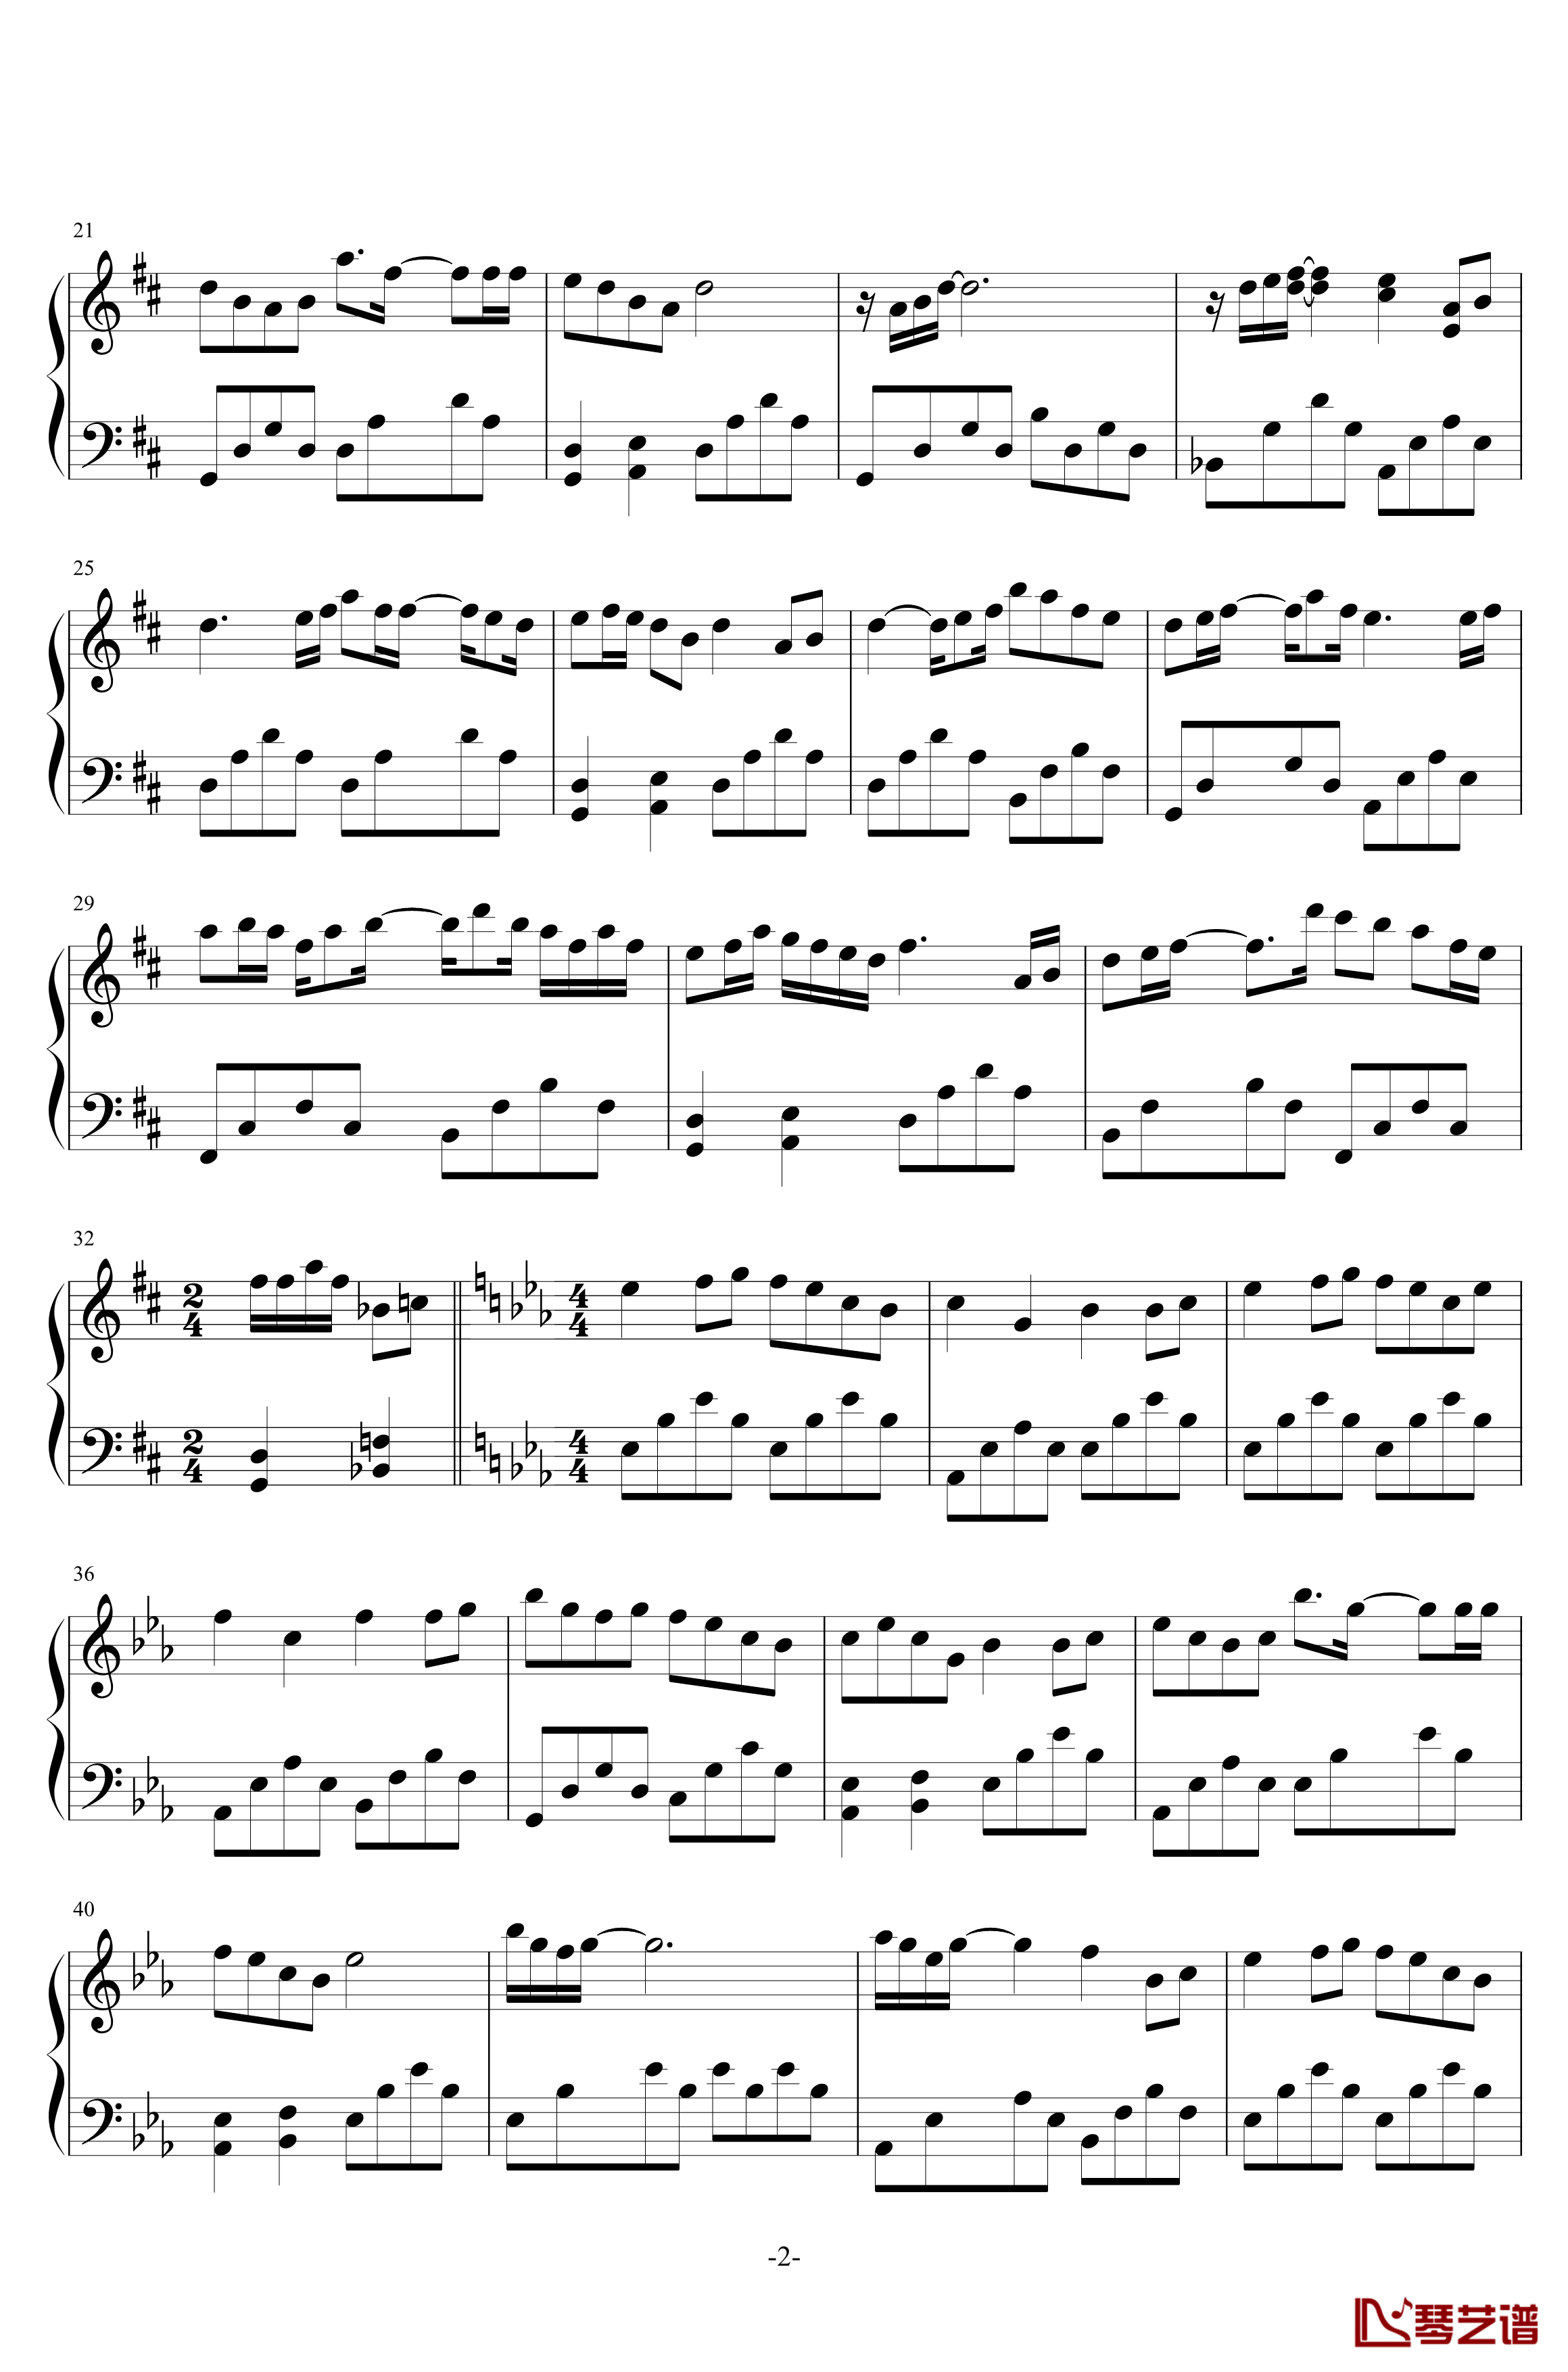 极乐歌钢琴谱-1.0完美版-柯佩磊2